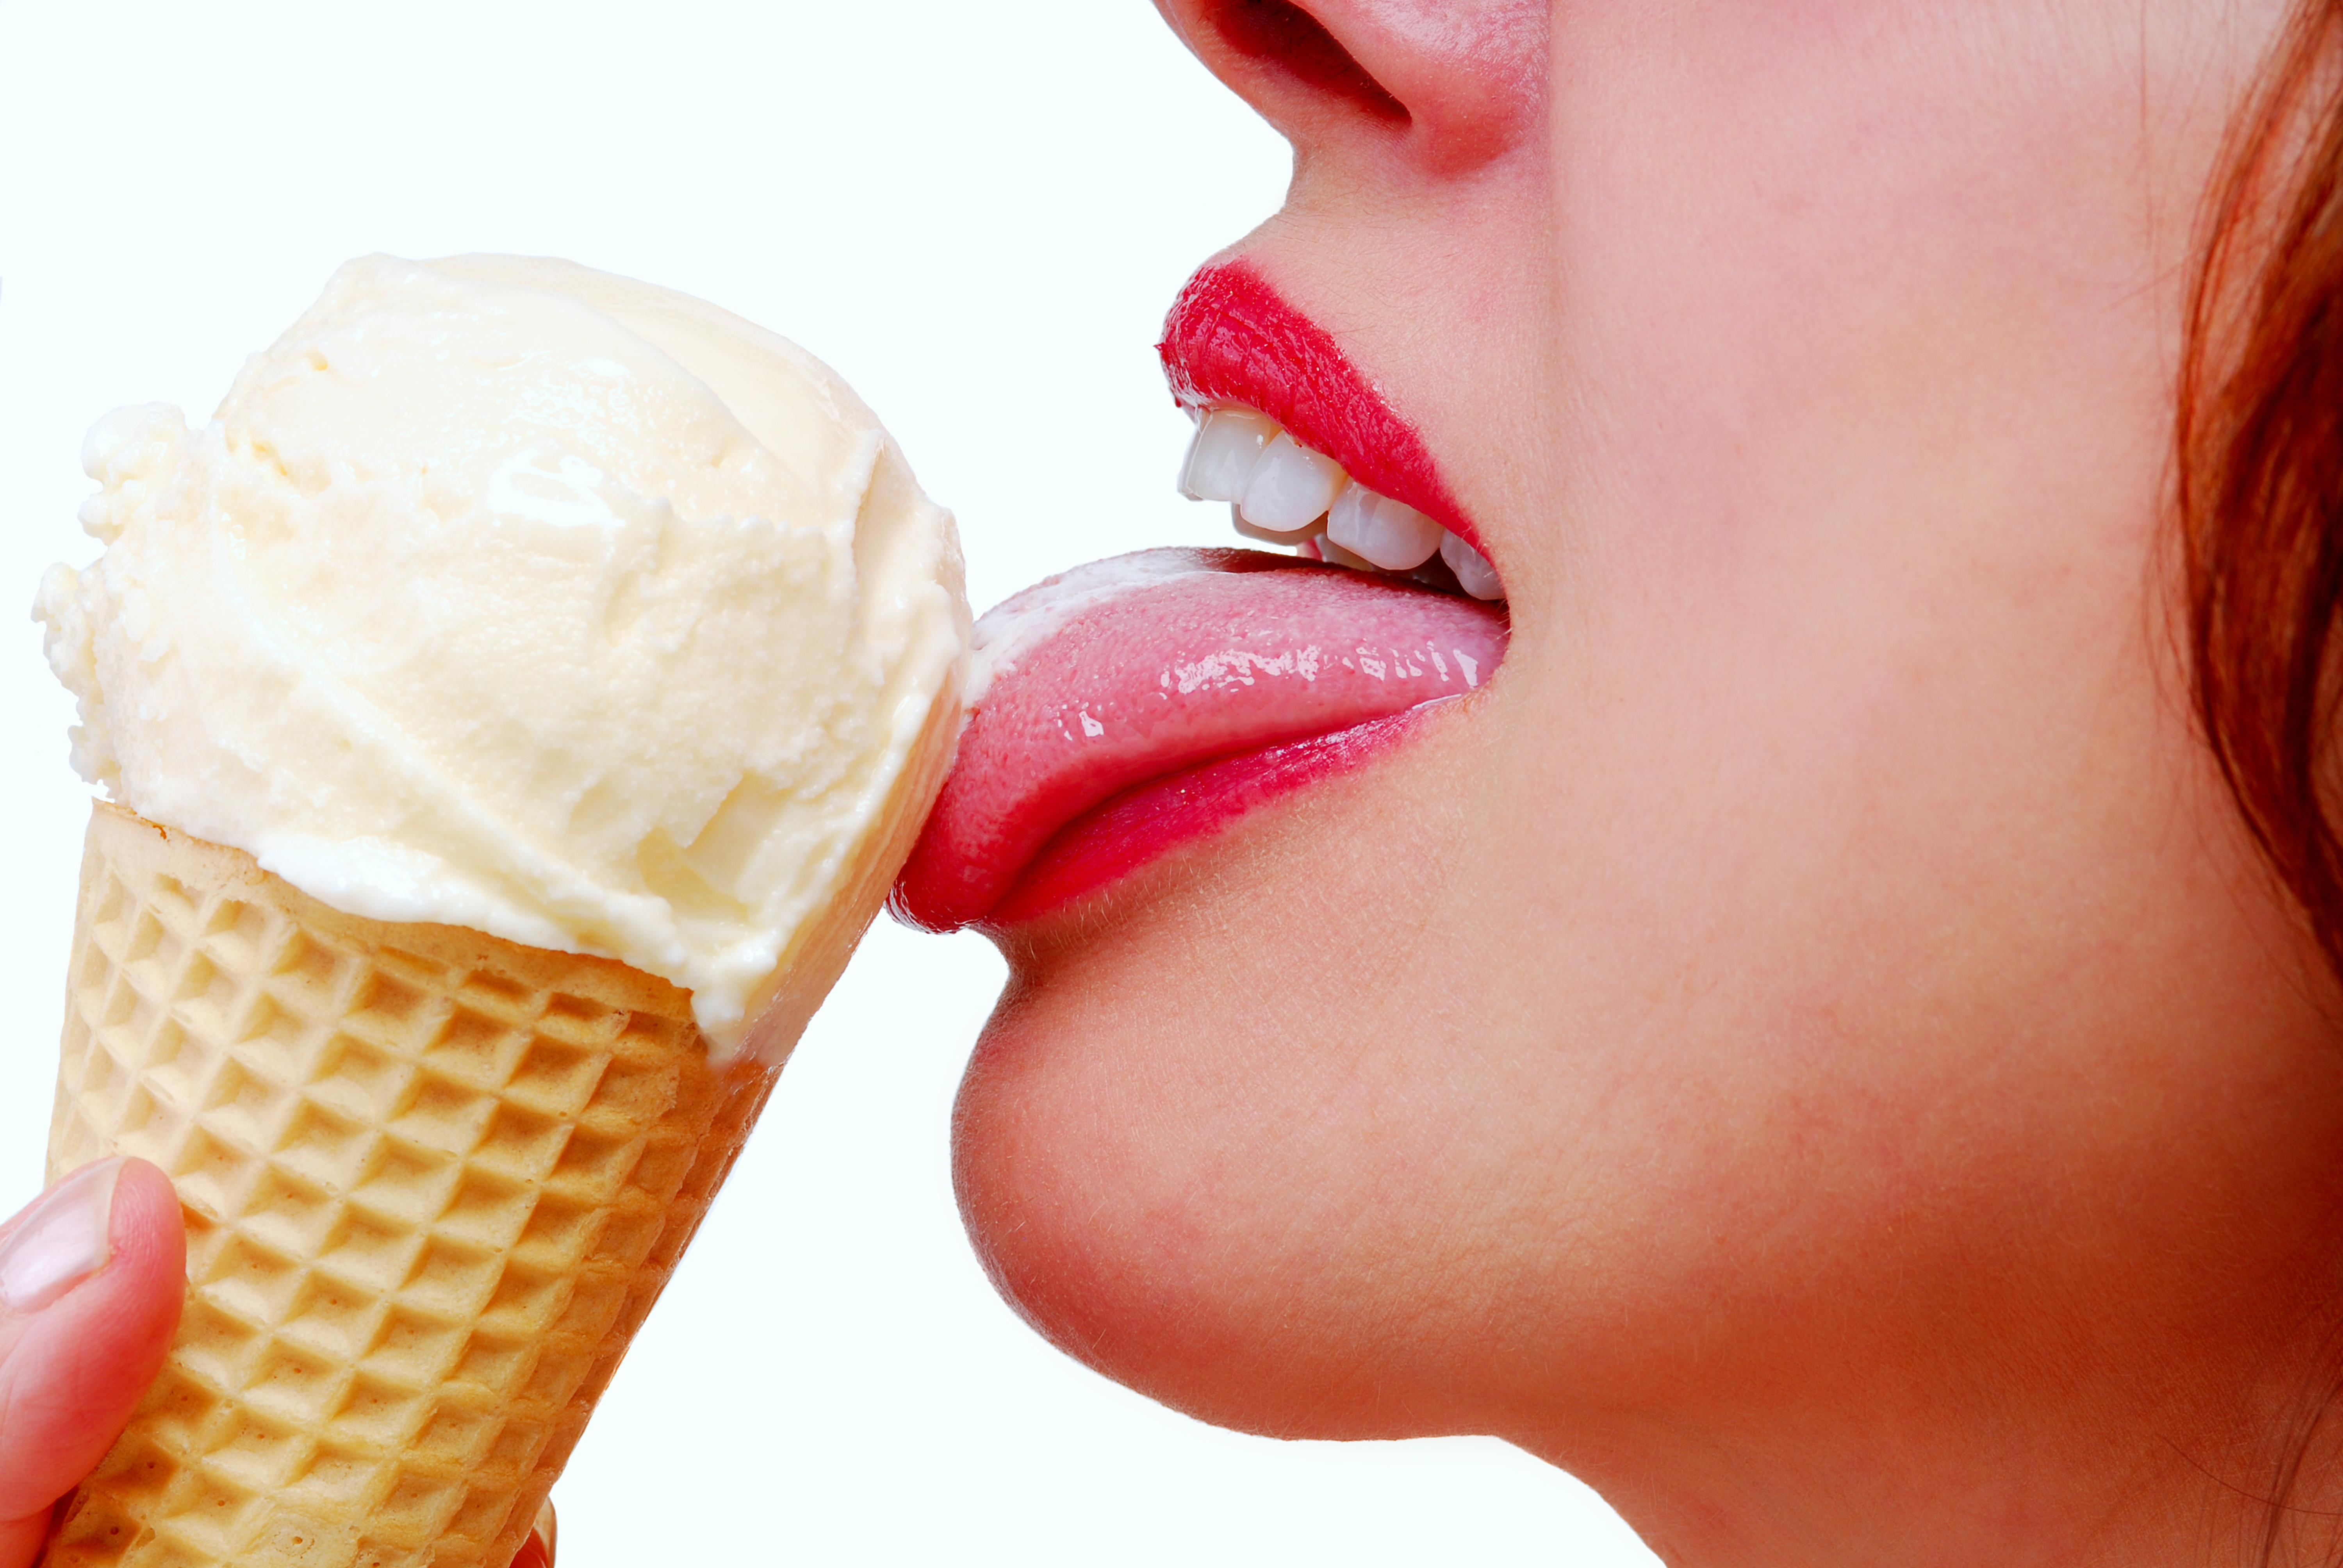 Удовлетворение языком. Девушка облизывает мороженое. Женщина ест мороженое. Девушка лижет мороженое. Кушать мороженое.